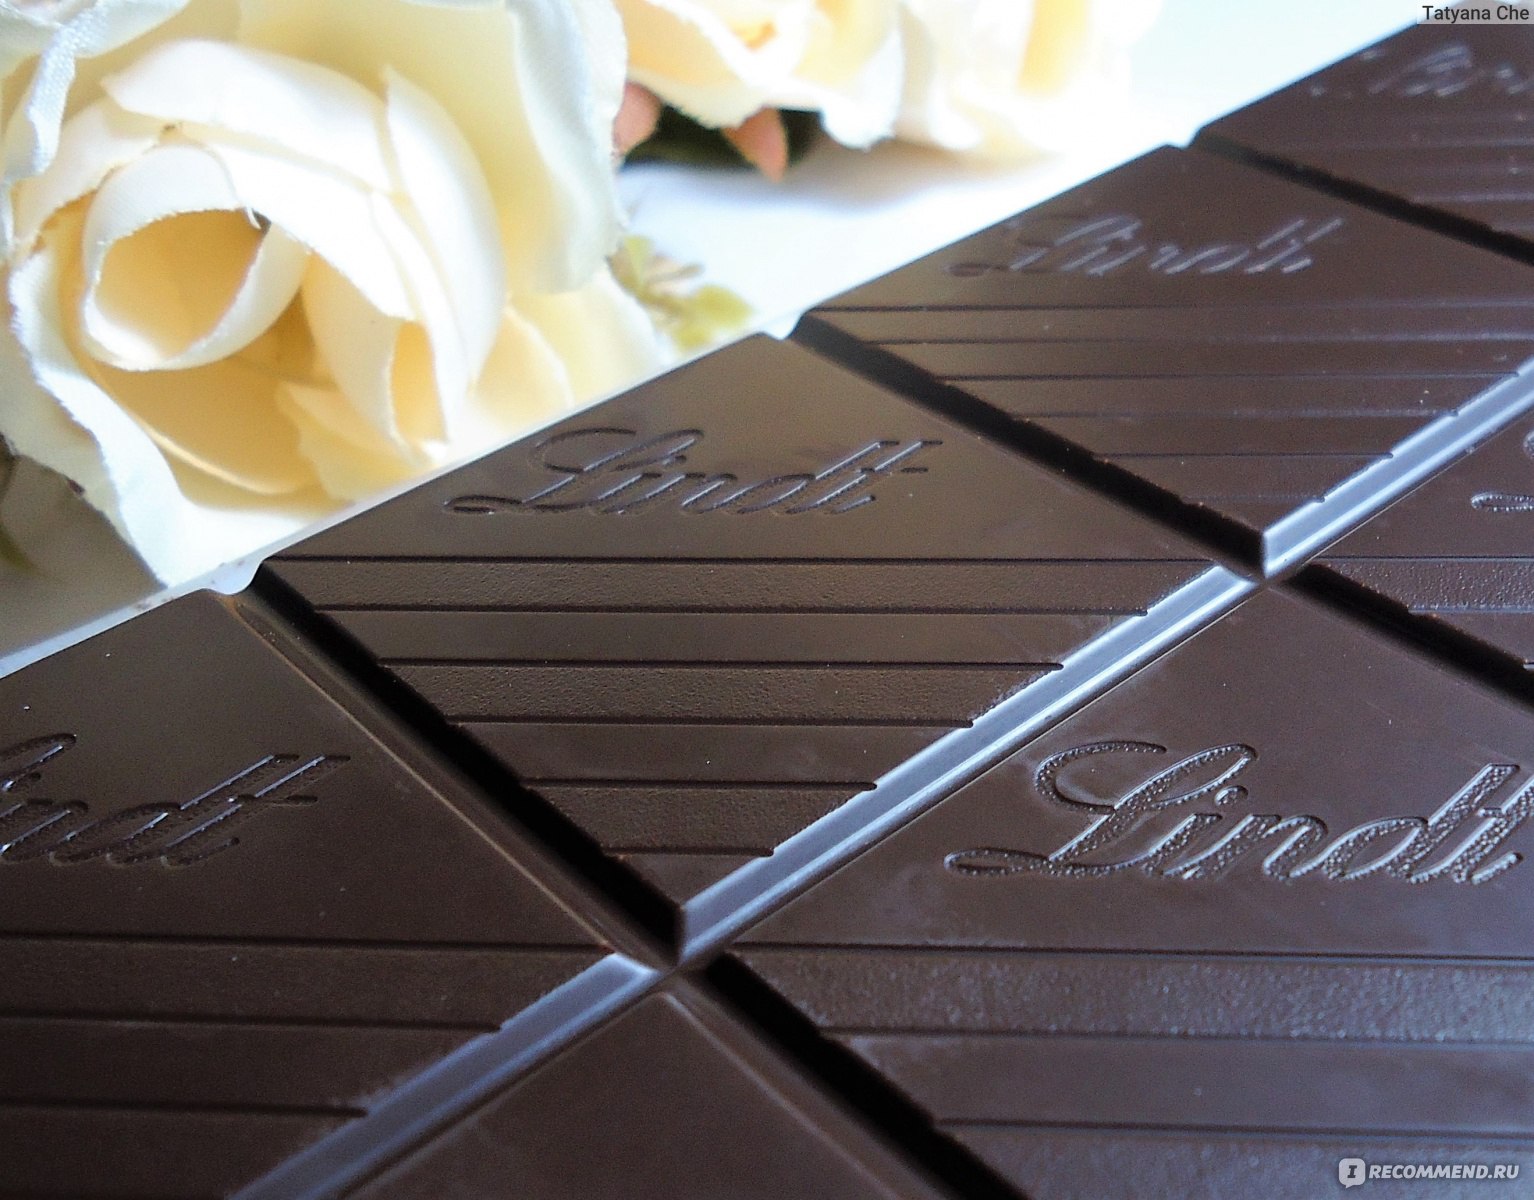 Категория: Разные продукты Бренд: Lindt Тип продукта: Темный шоколад.